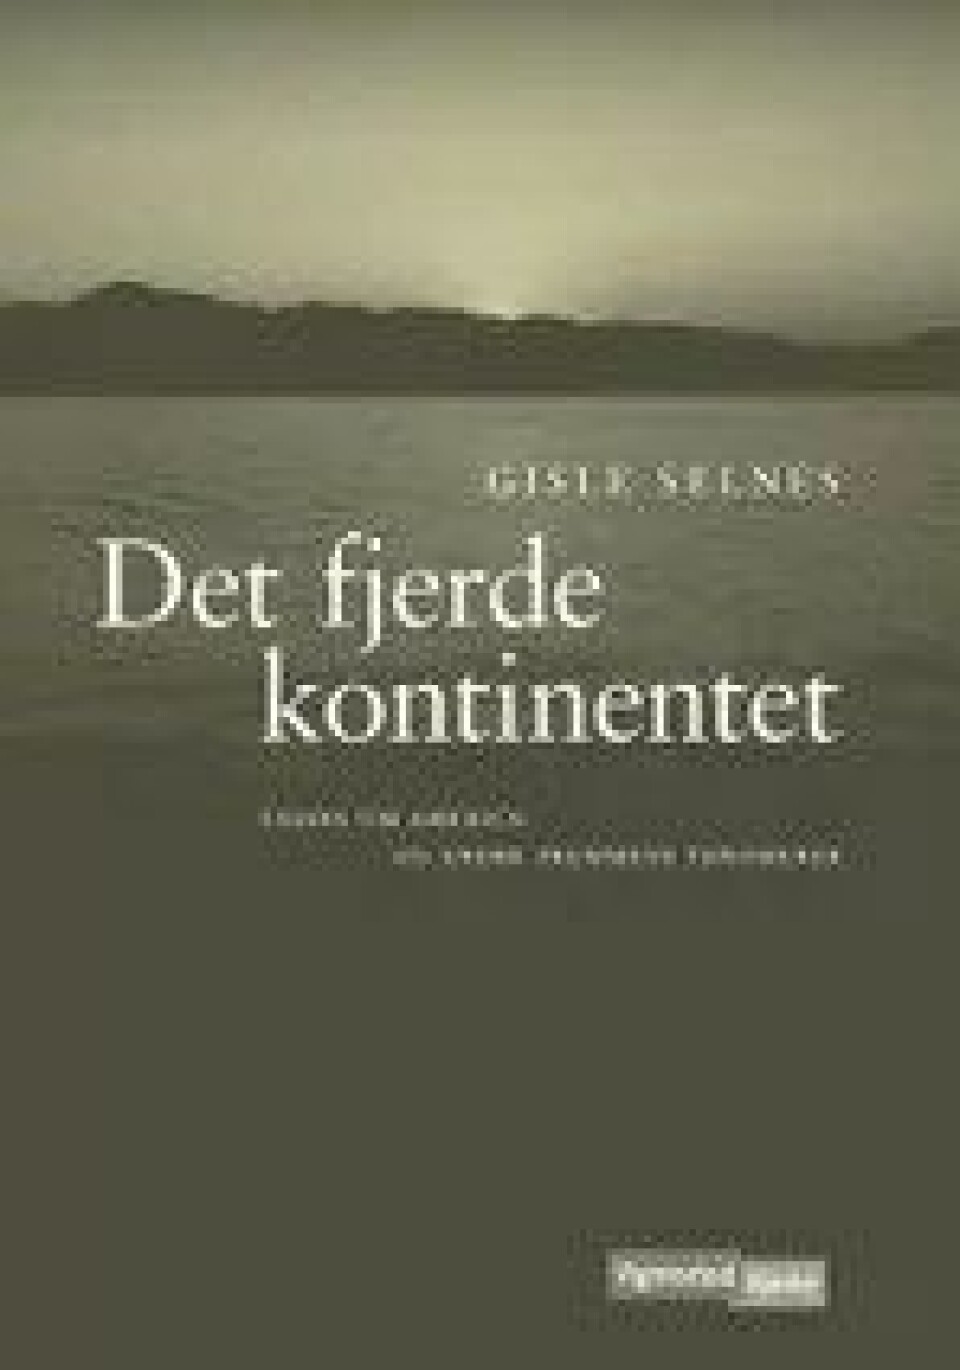 Gisle Selnes: Det fjerde kontinentet. Essays om America og andre fremmede fenomener (Vigmostad & Bjørke 2010)